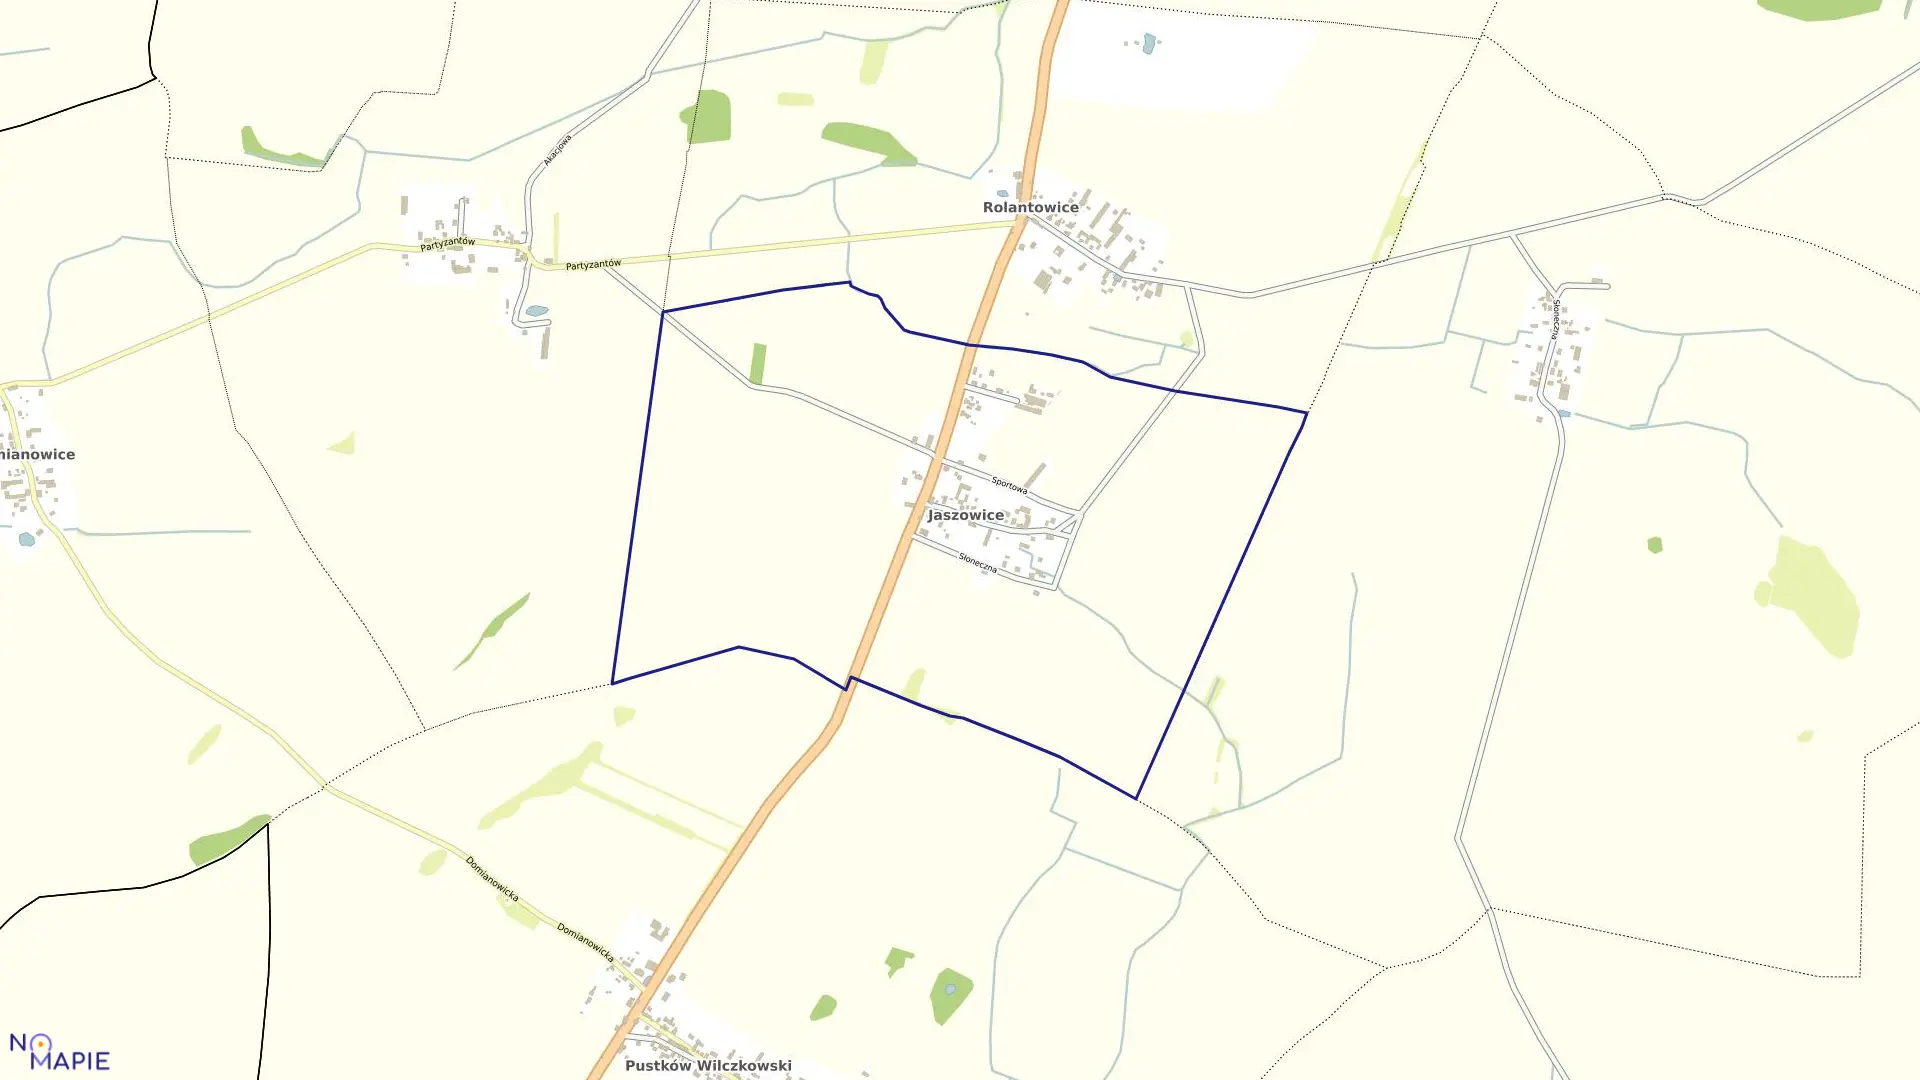 Mapa obrębu Jaszowice w gminie Kobierzyce